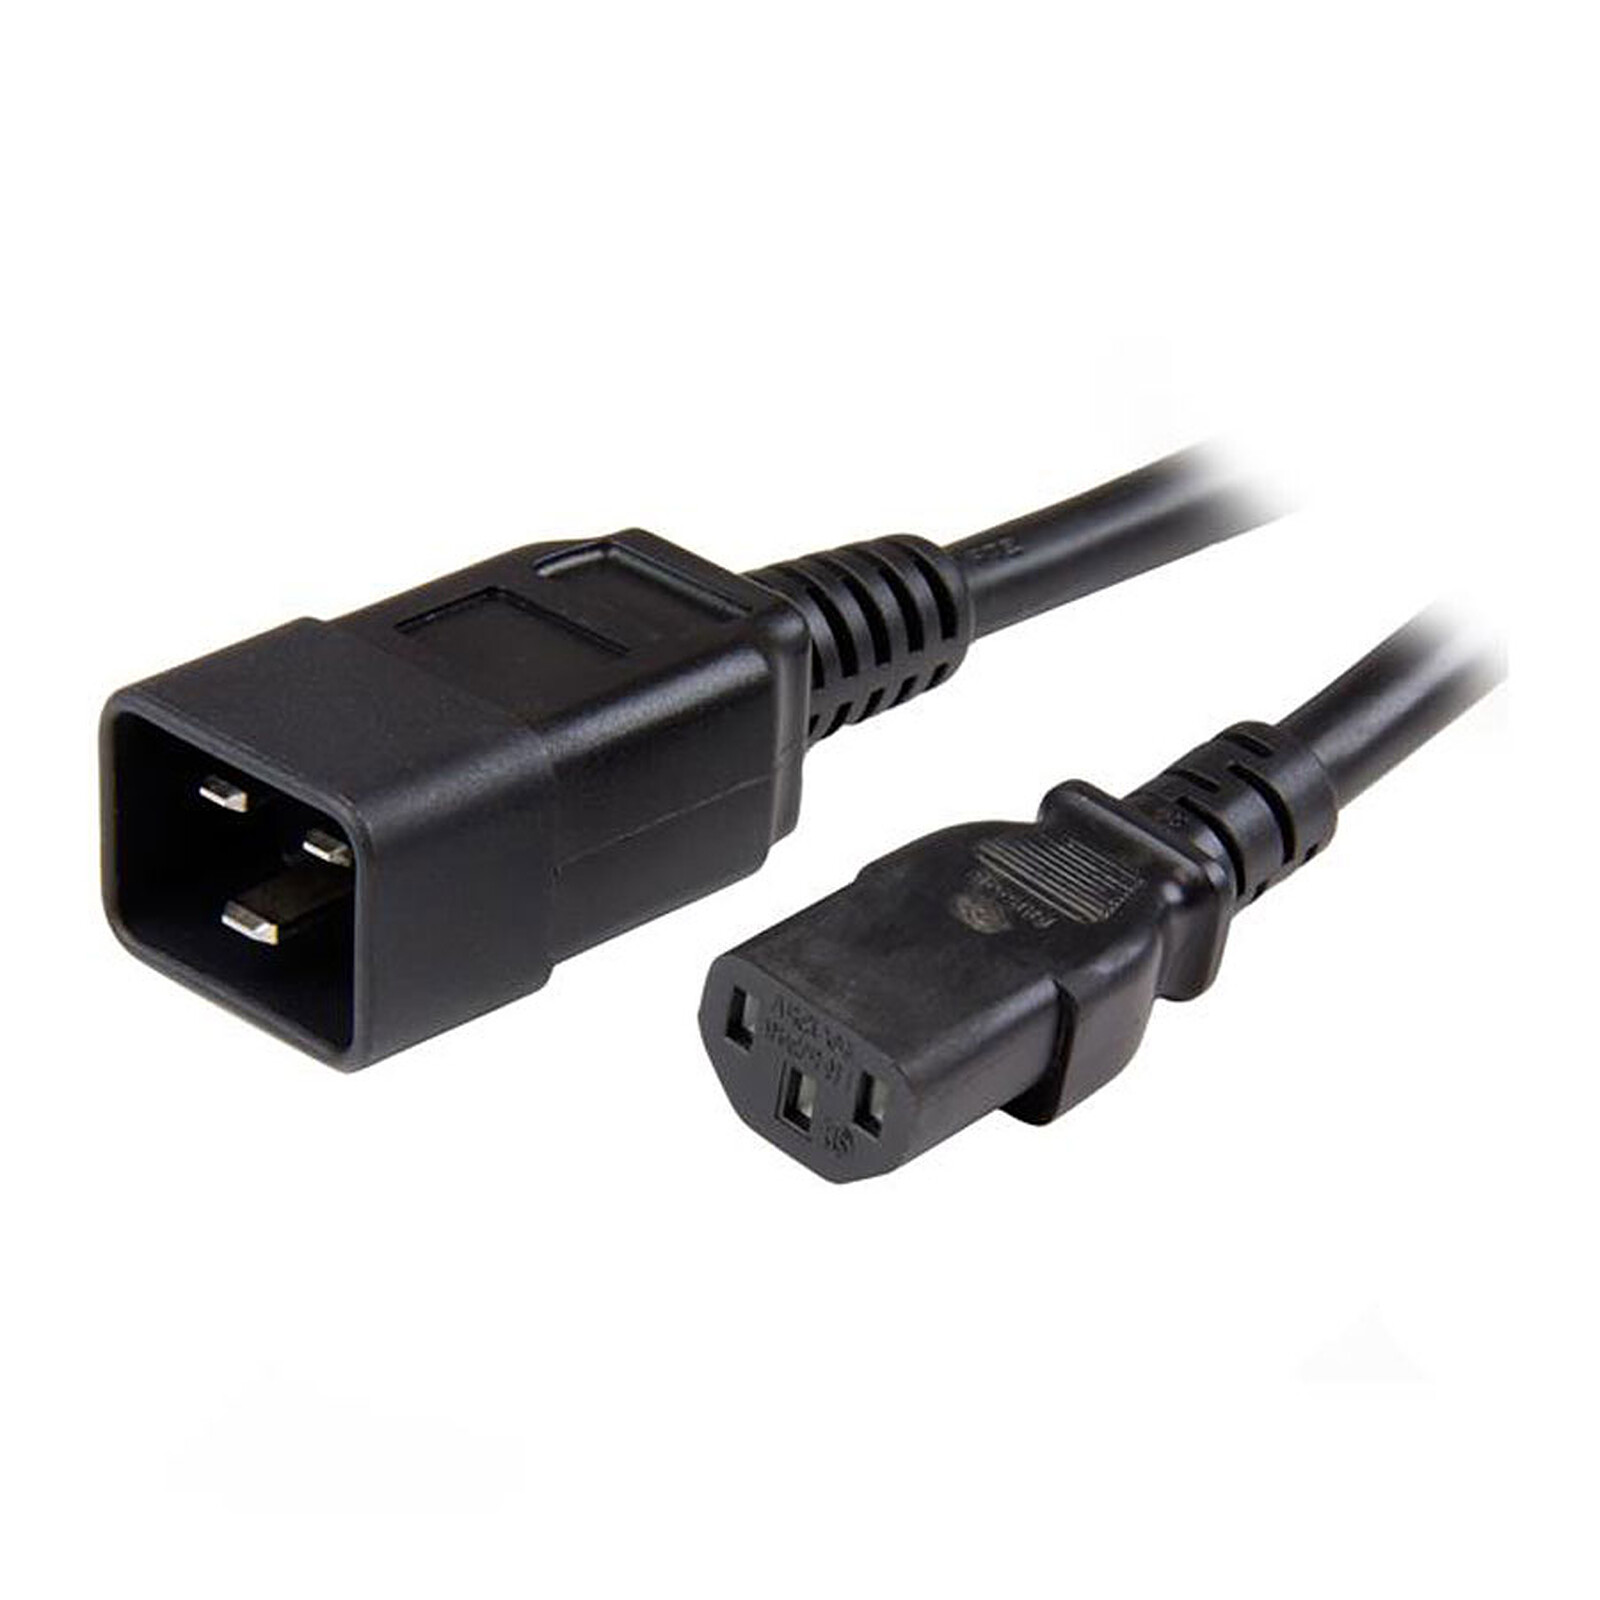 Double câble d'alimentation pour PC, moniteur et onduleur (1,8 m) - Câble  Secteur - Garantie 3 ans LDLC